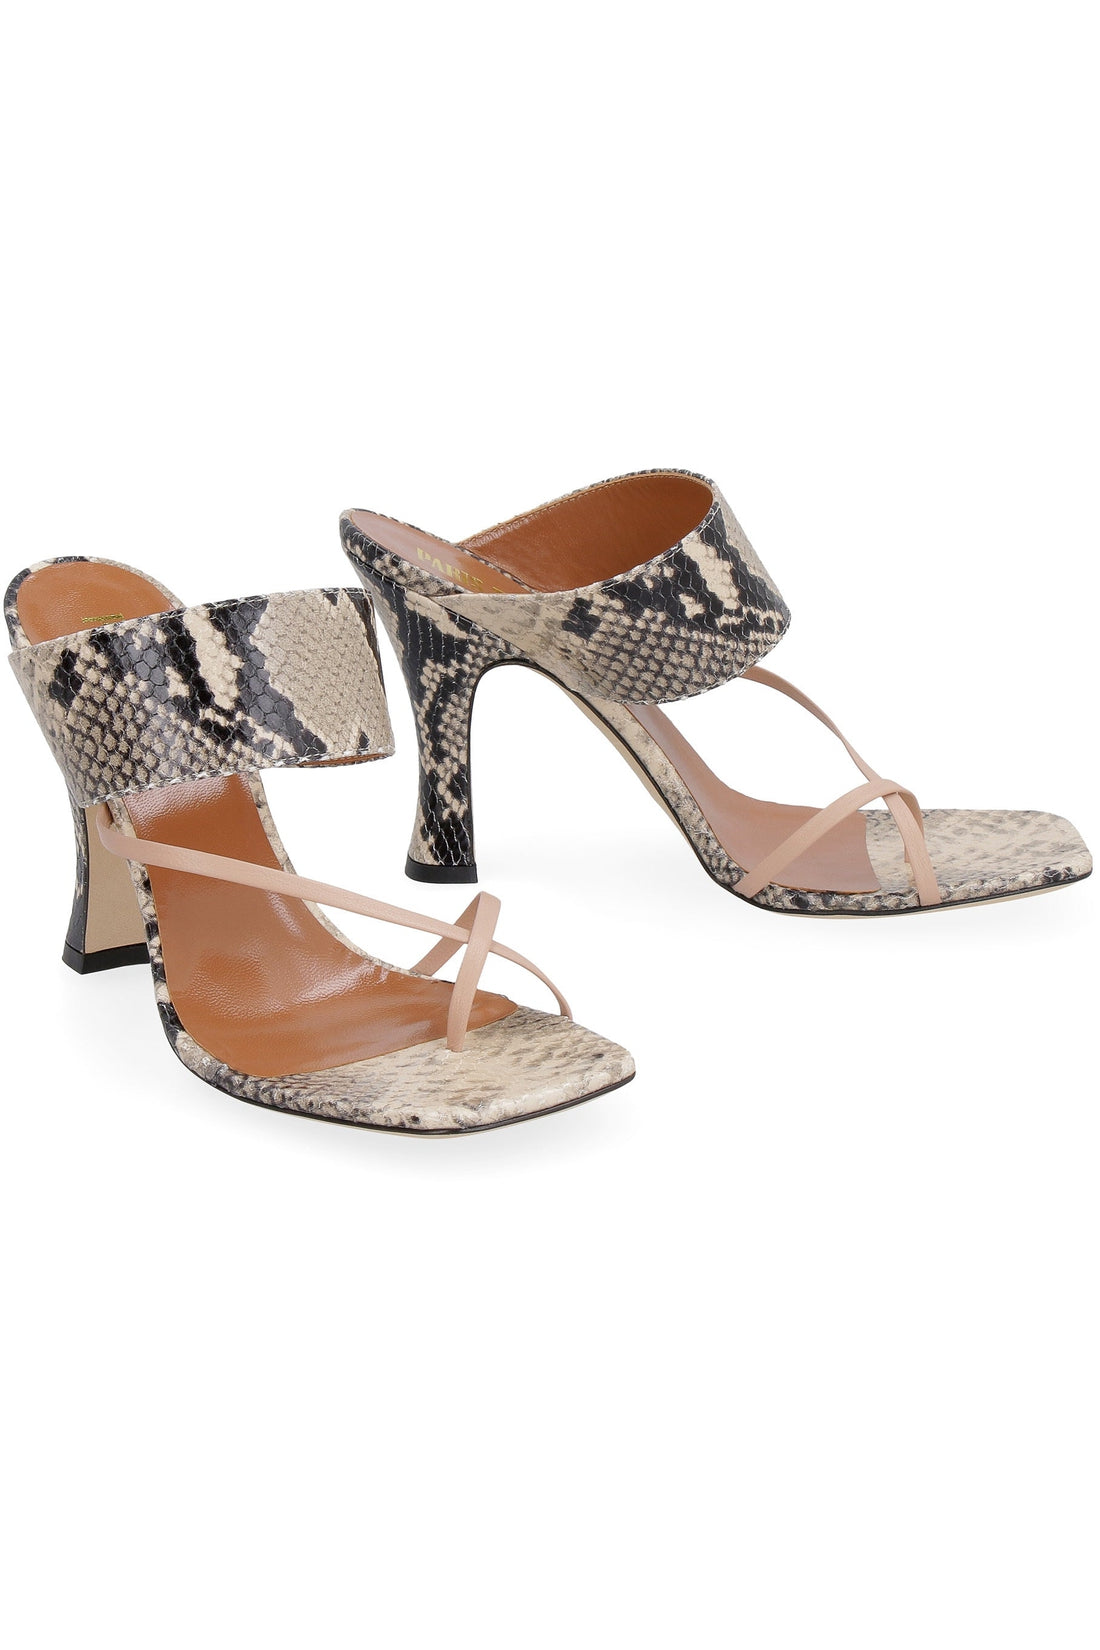 Paris Texas-OUTLET-SALE-Leather thong-sandals-ARCHIVIST